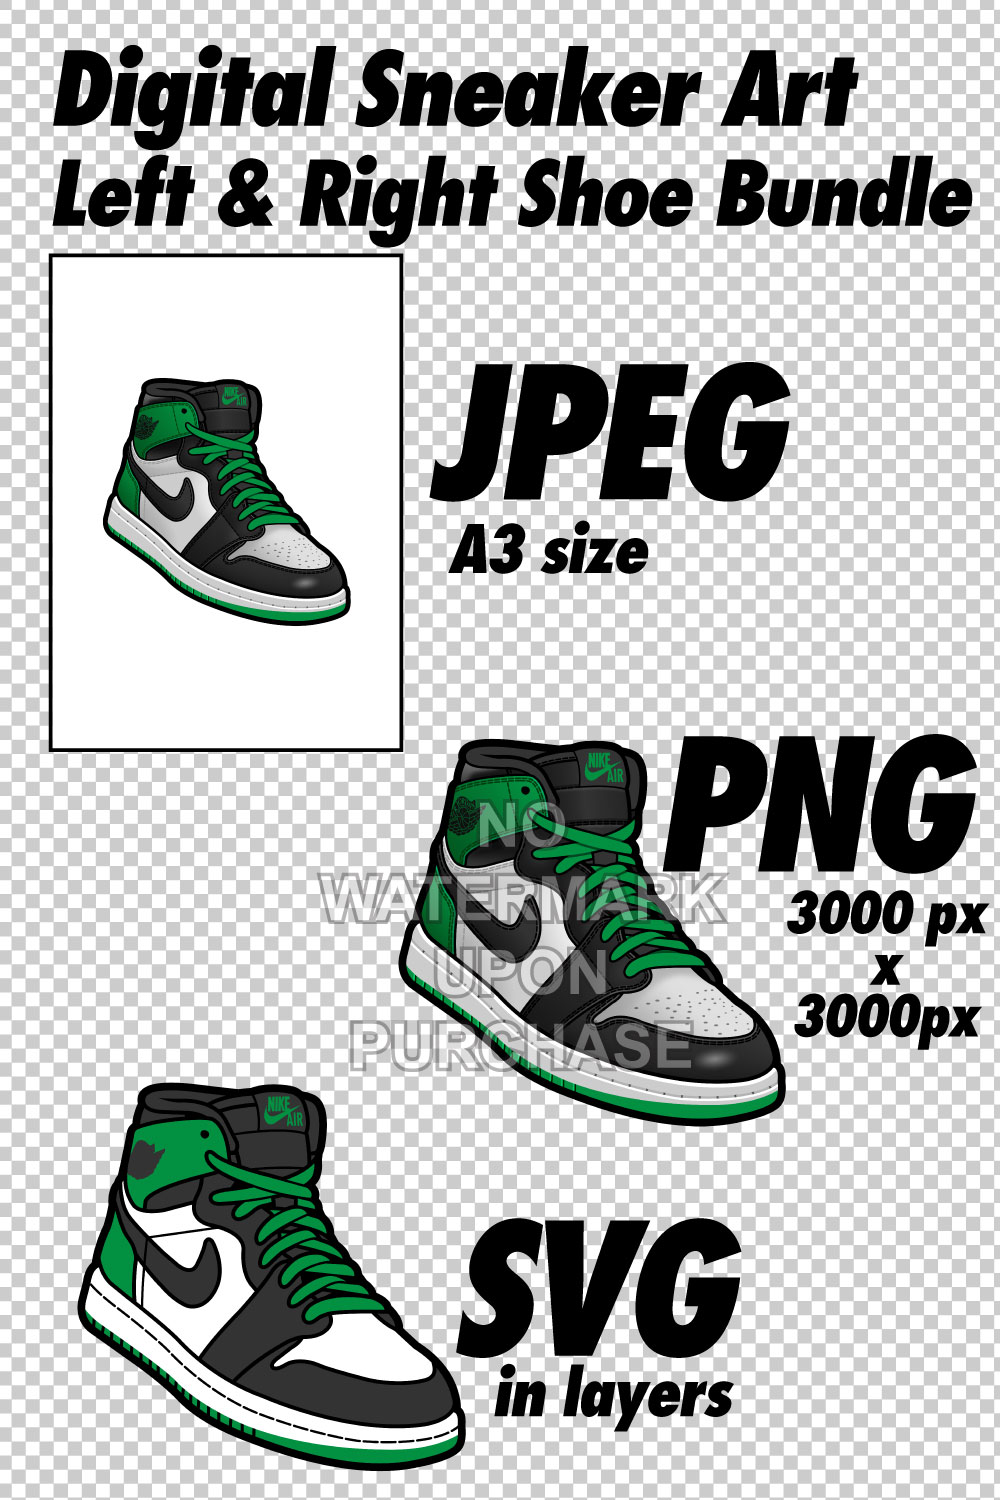 Air Jordan 1 Lucky Green JPEG PNG SVG Sneaker Art right & left shoe bundle pinterest preview image.